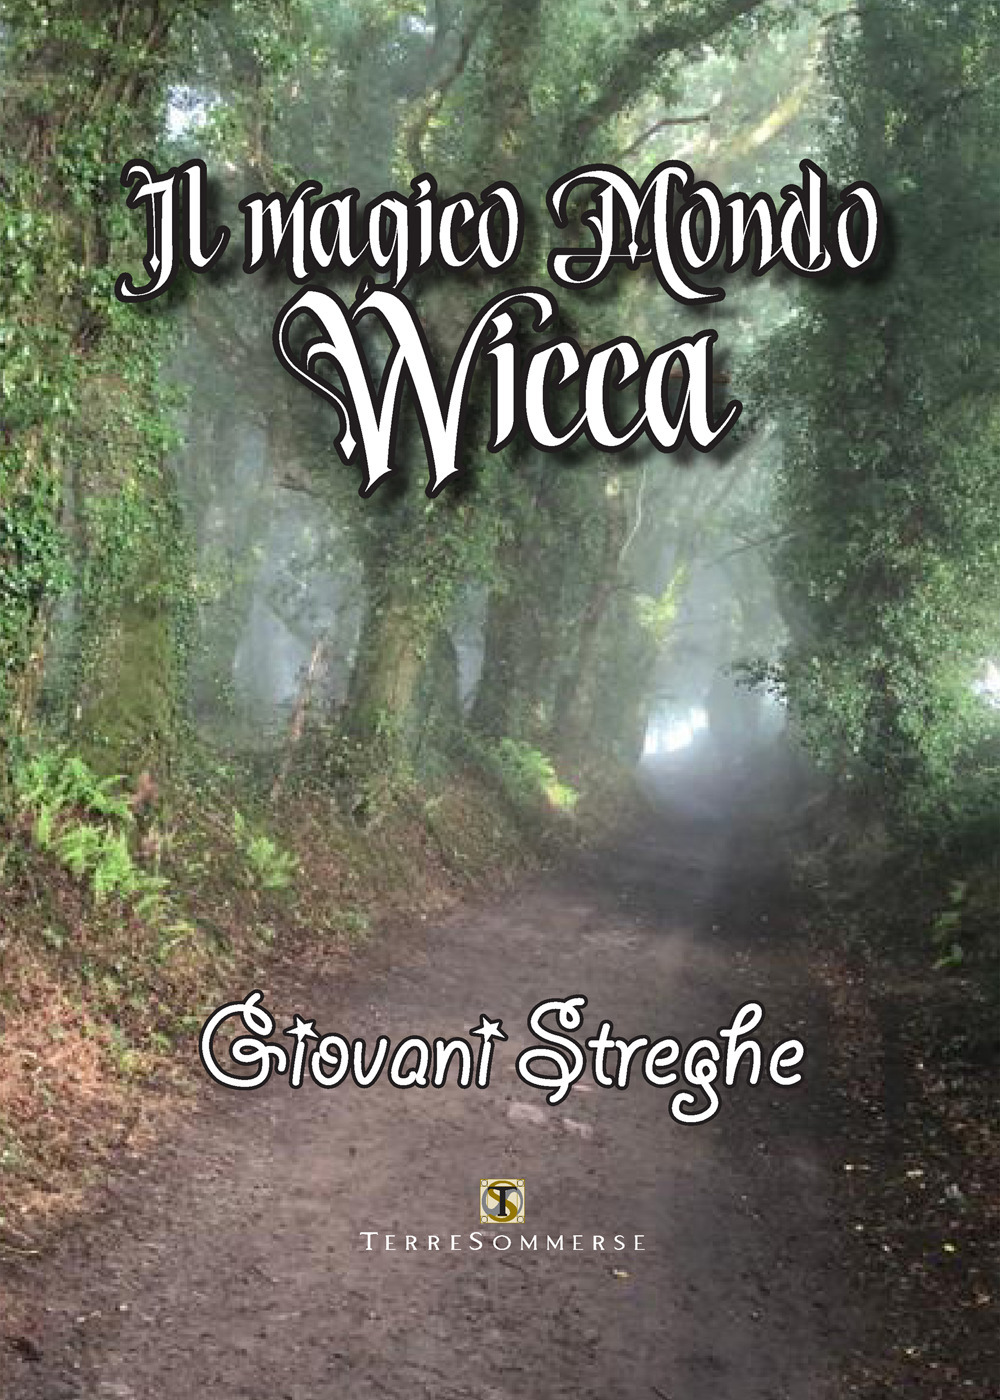 Image of Il magico mondo wicca